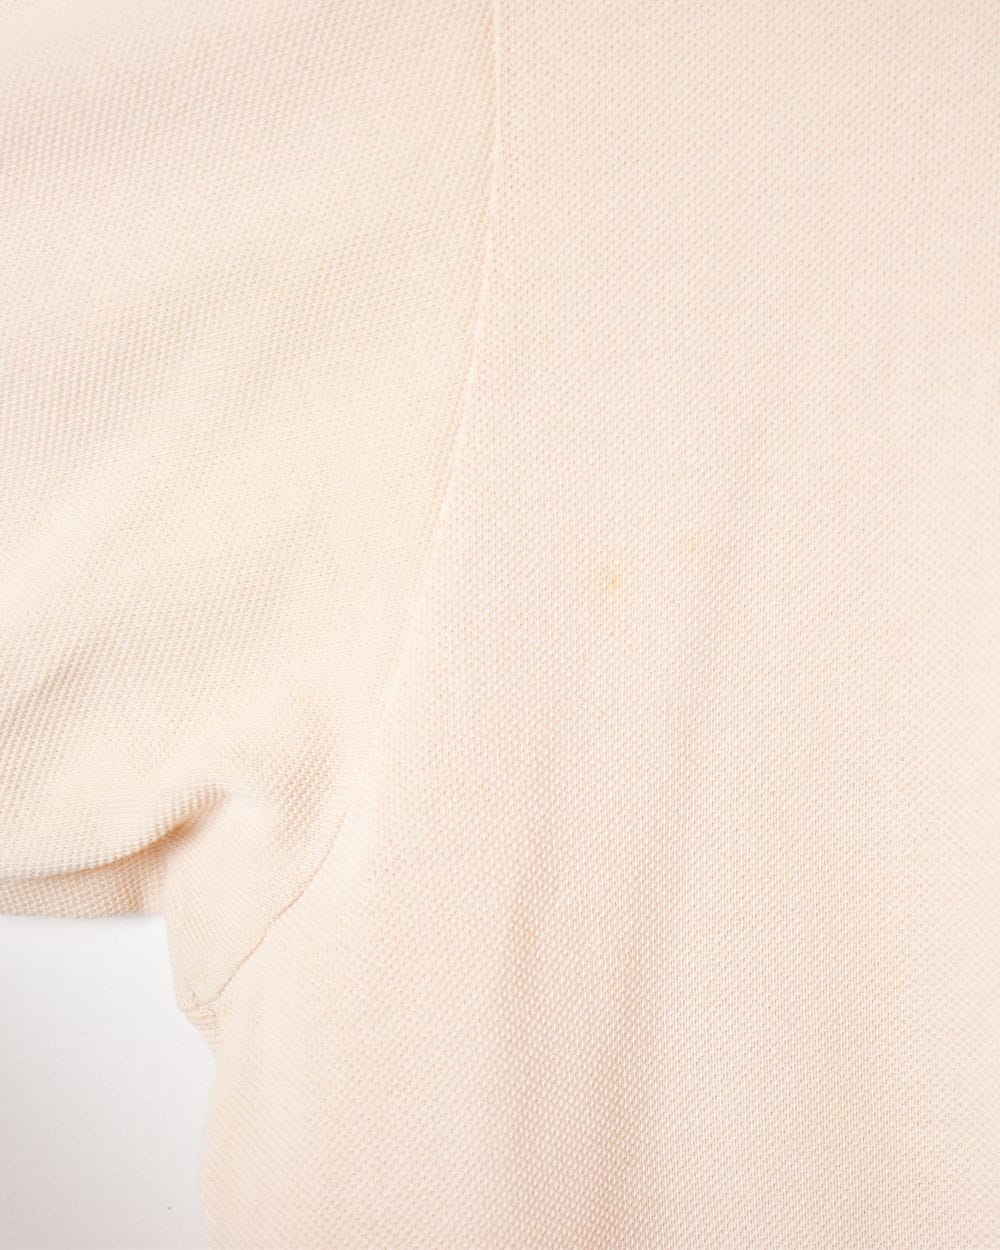 Pink Chemise Lacoste Polo Shirt - Medium